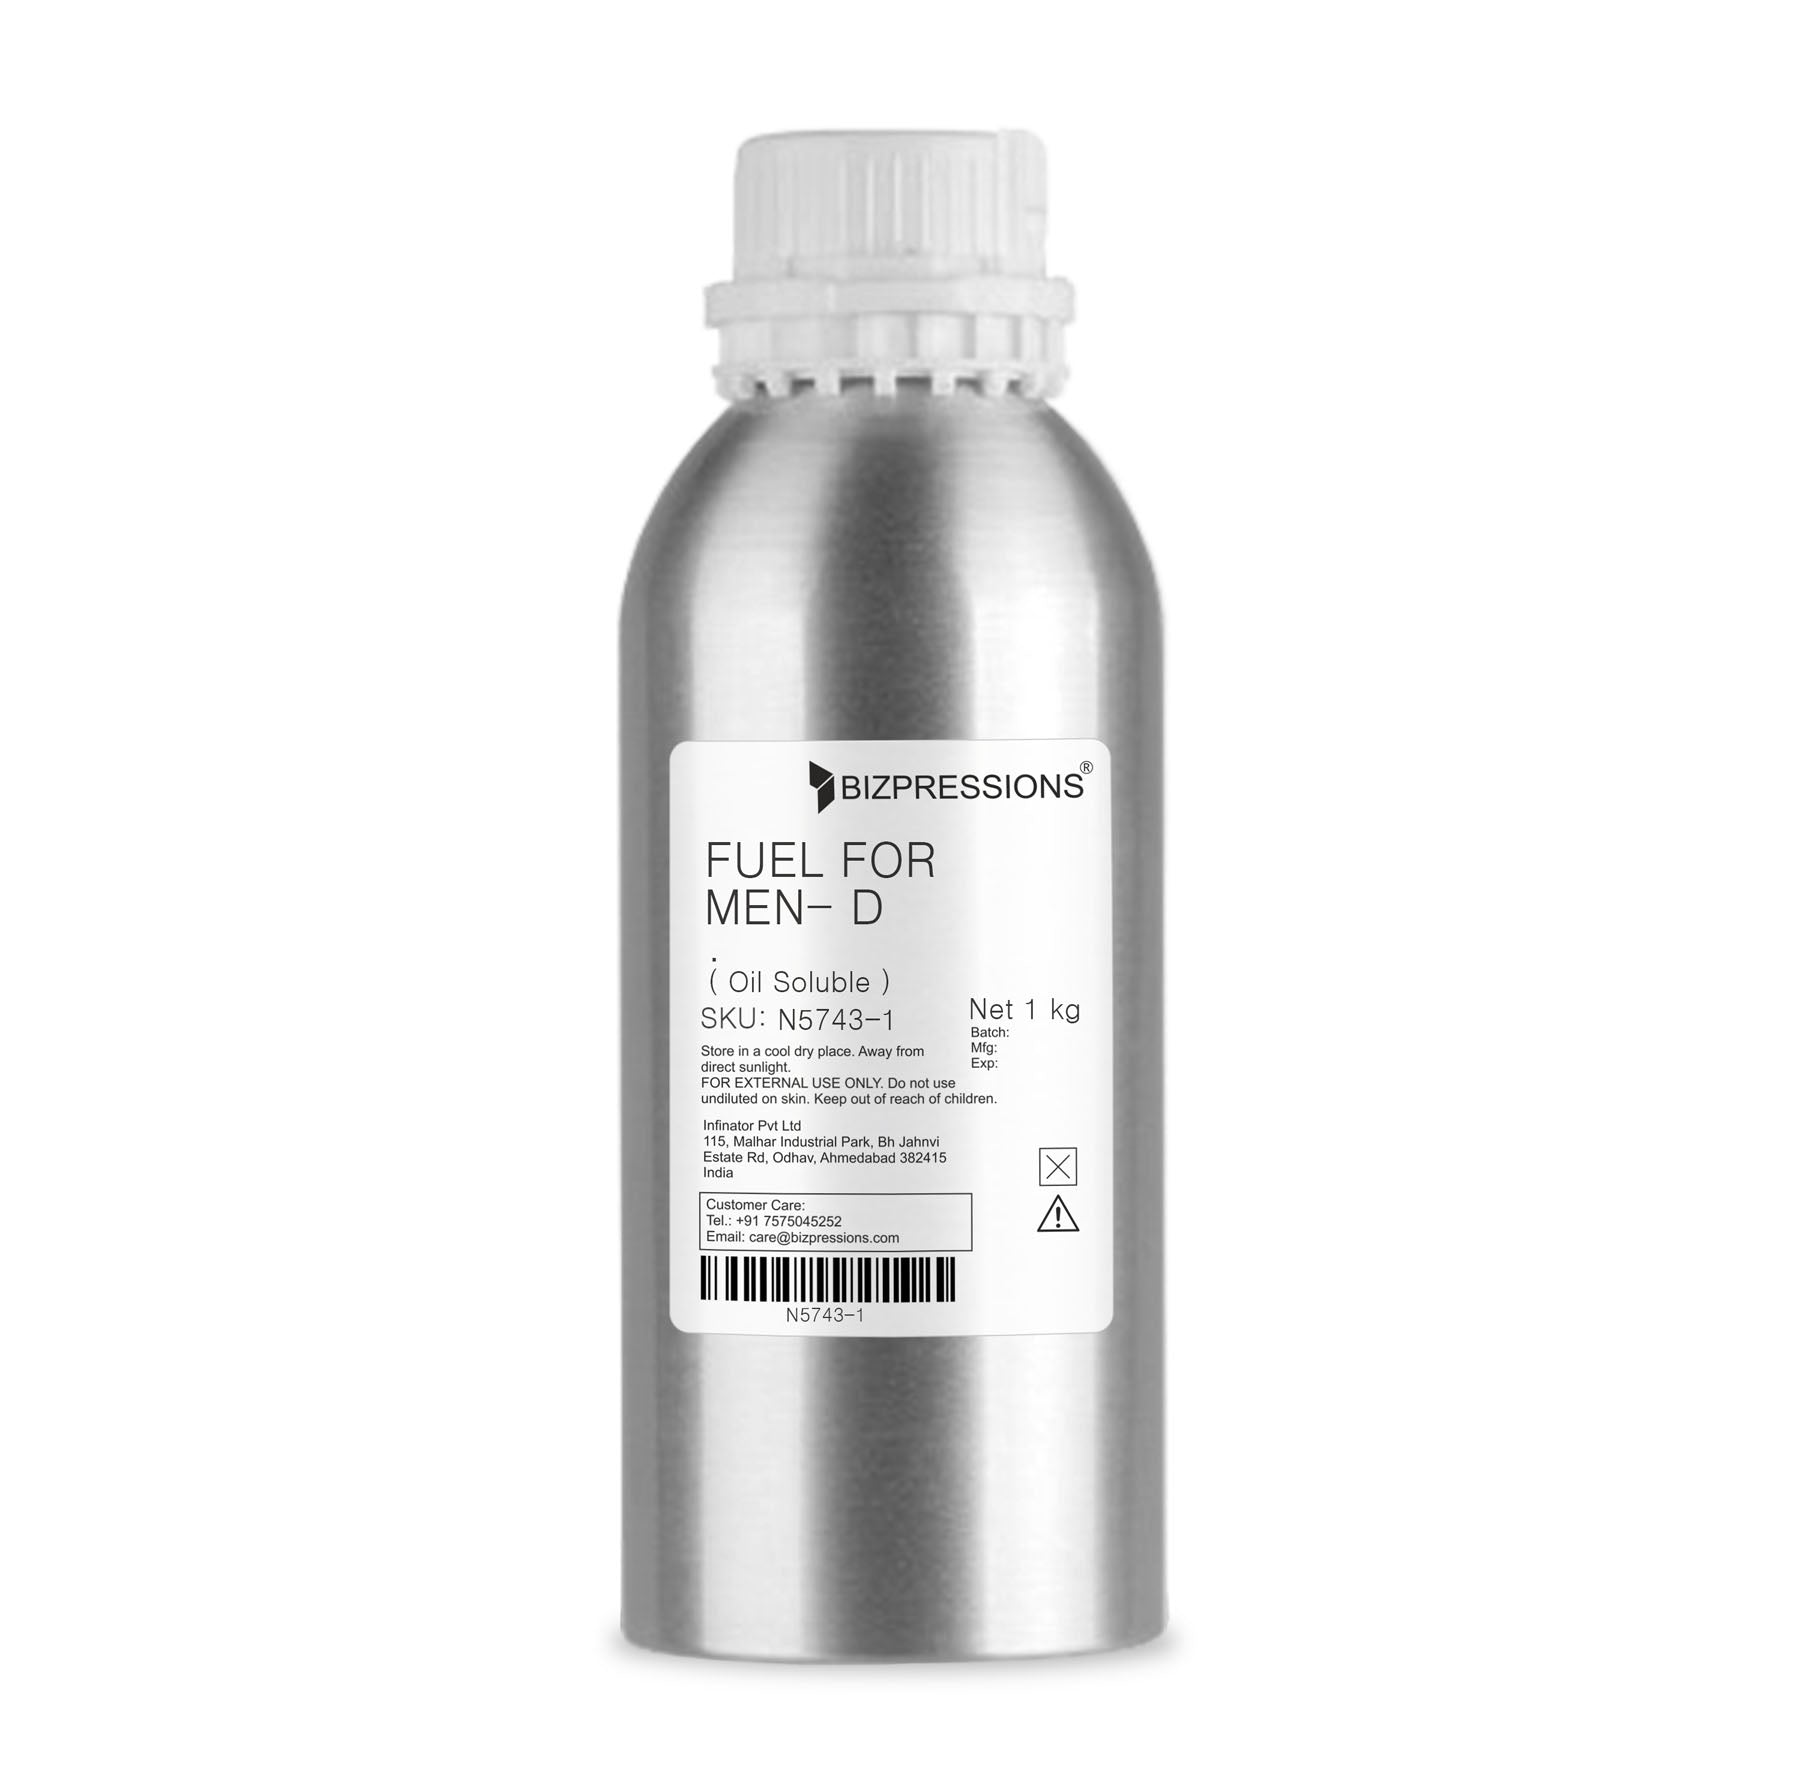 FUEL FOR MEN- D - Fragrance ( Oil Soluble ) - 1 kg